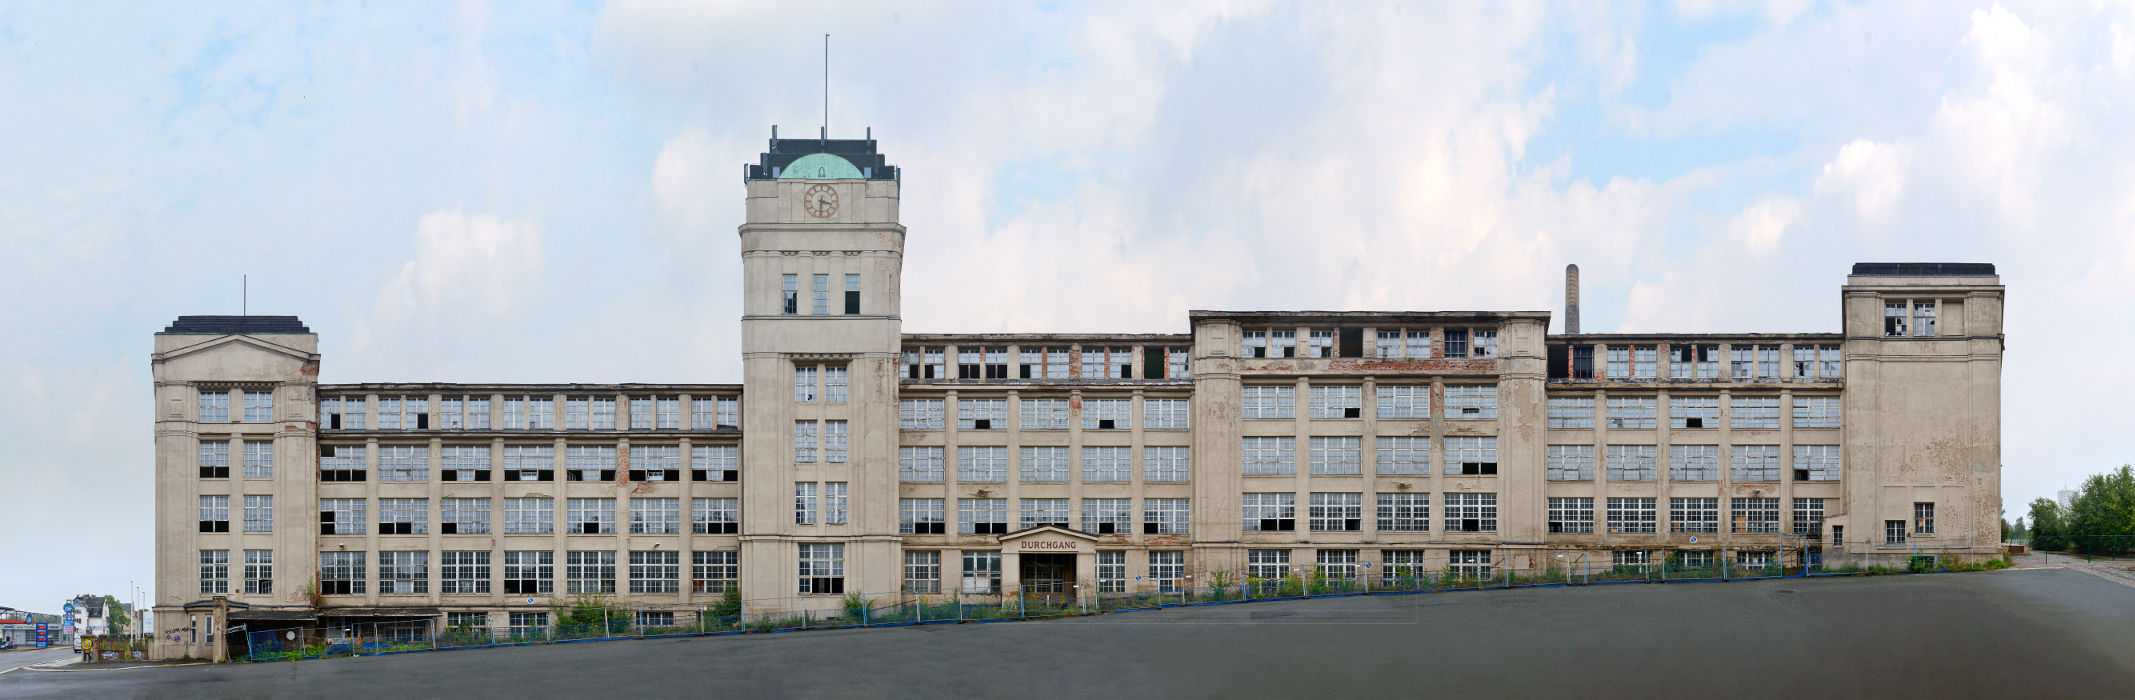 Chemnitz Industry Architecture